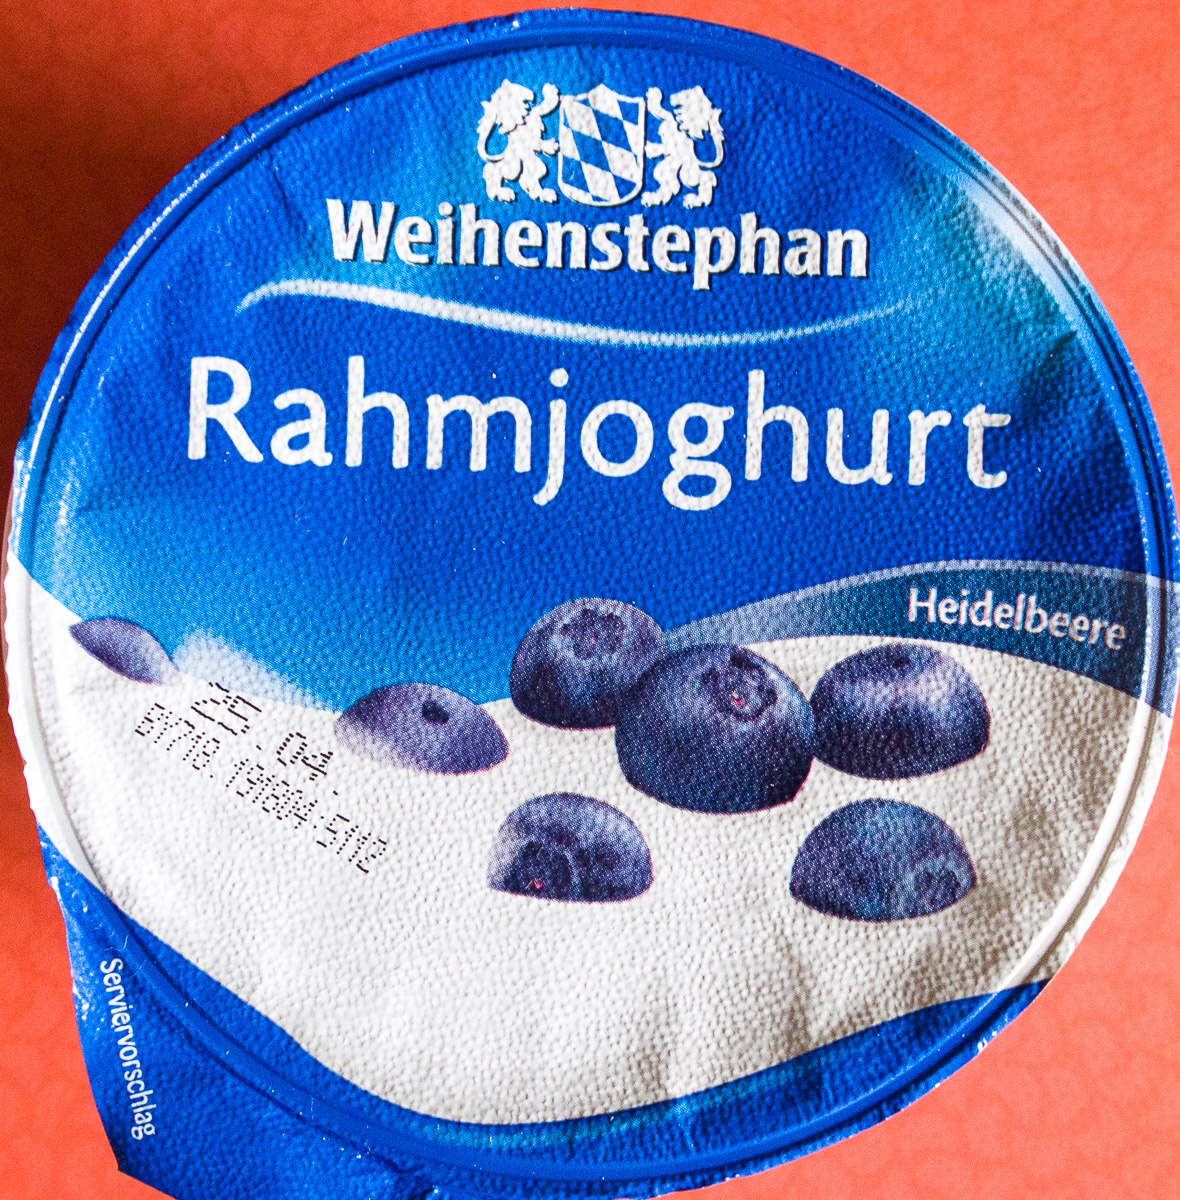 Rahmjoghurt Heidelbeere - Produkt